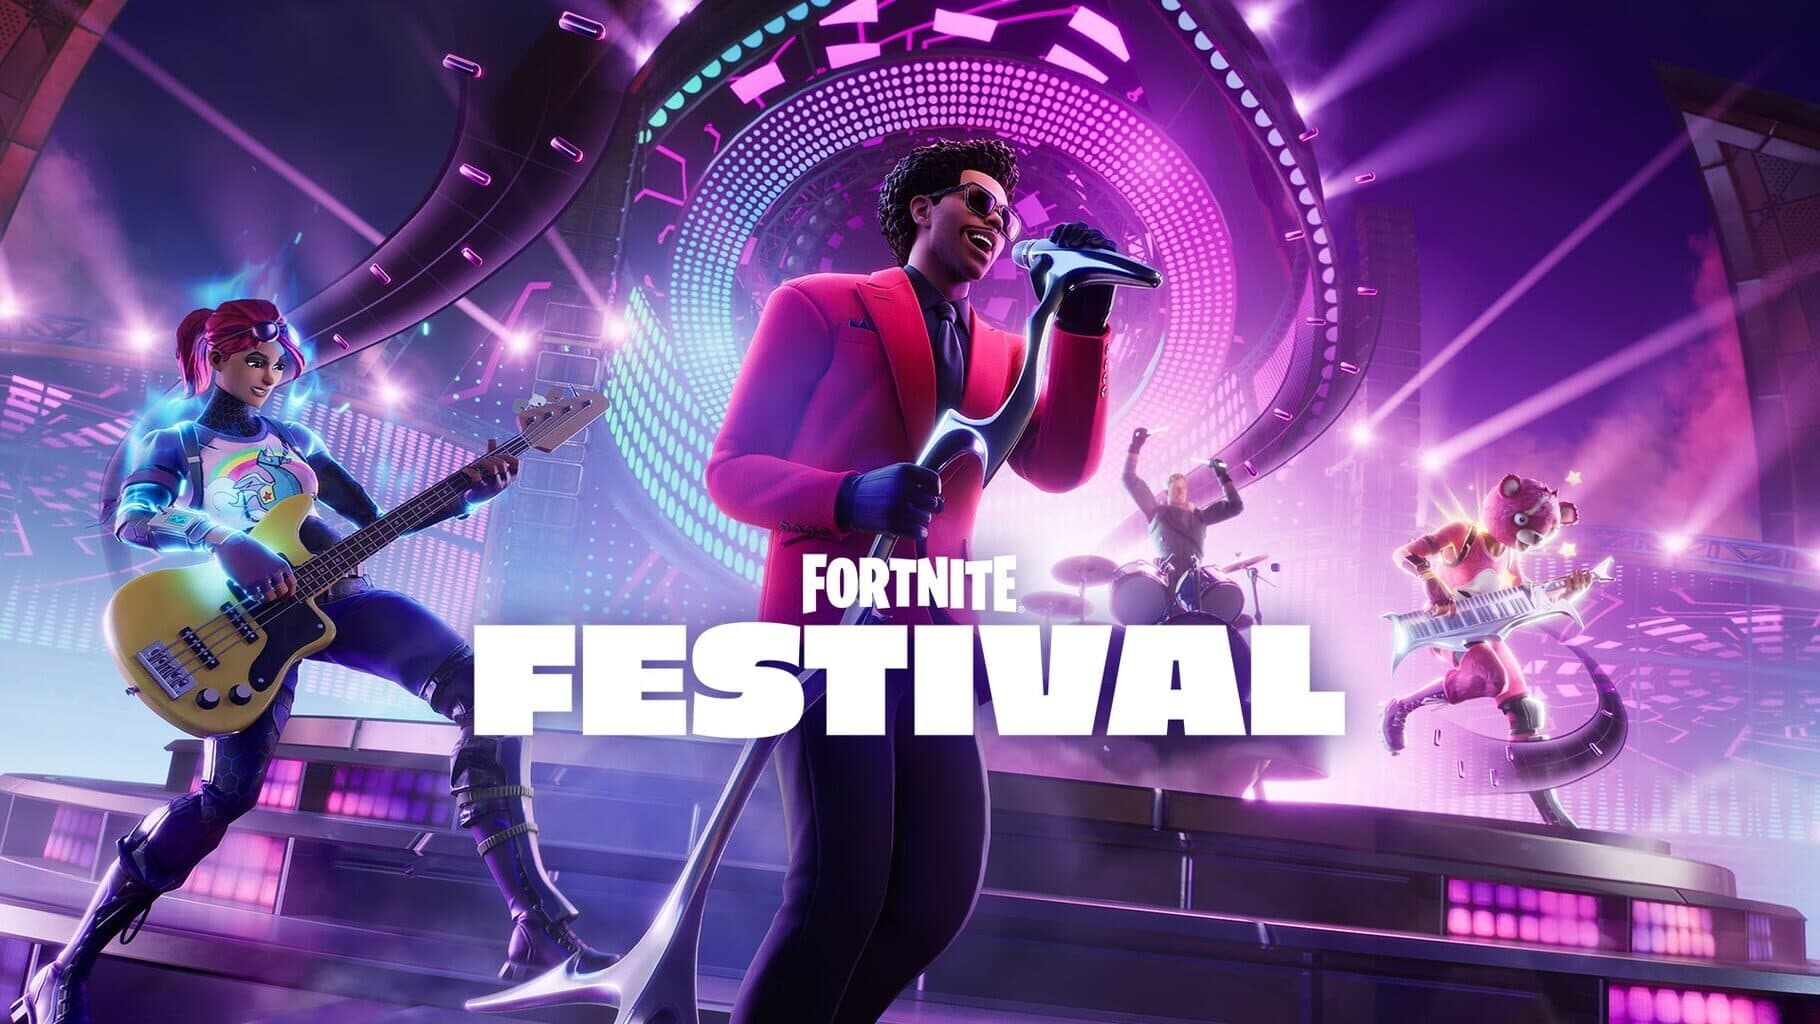 Fortnite Festival Image